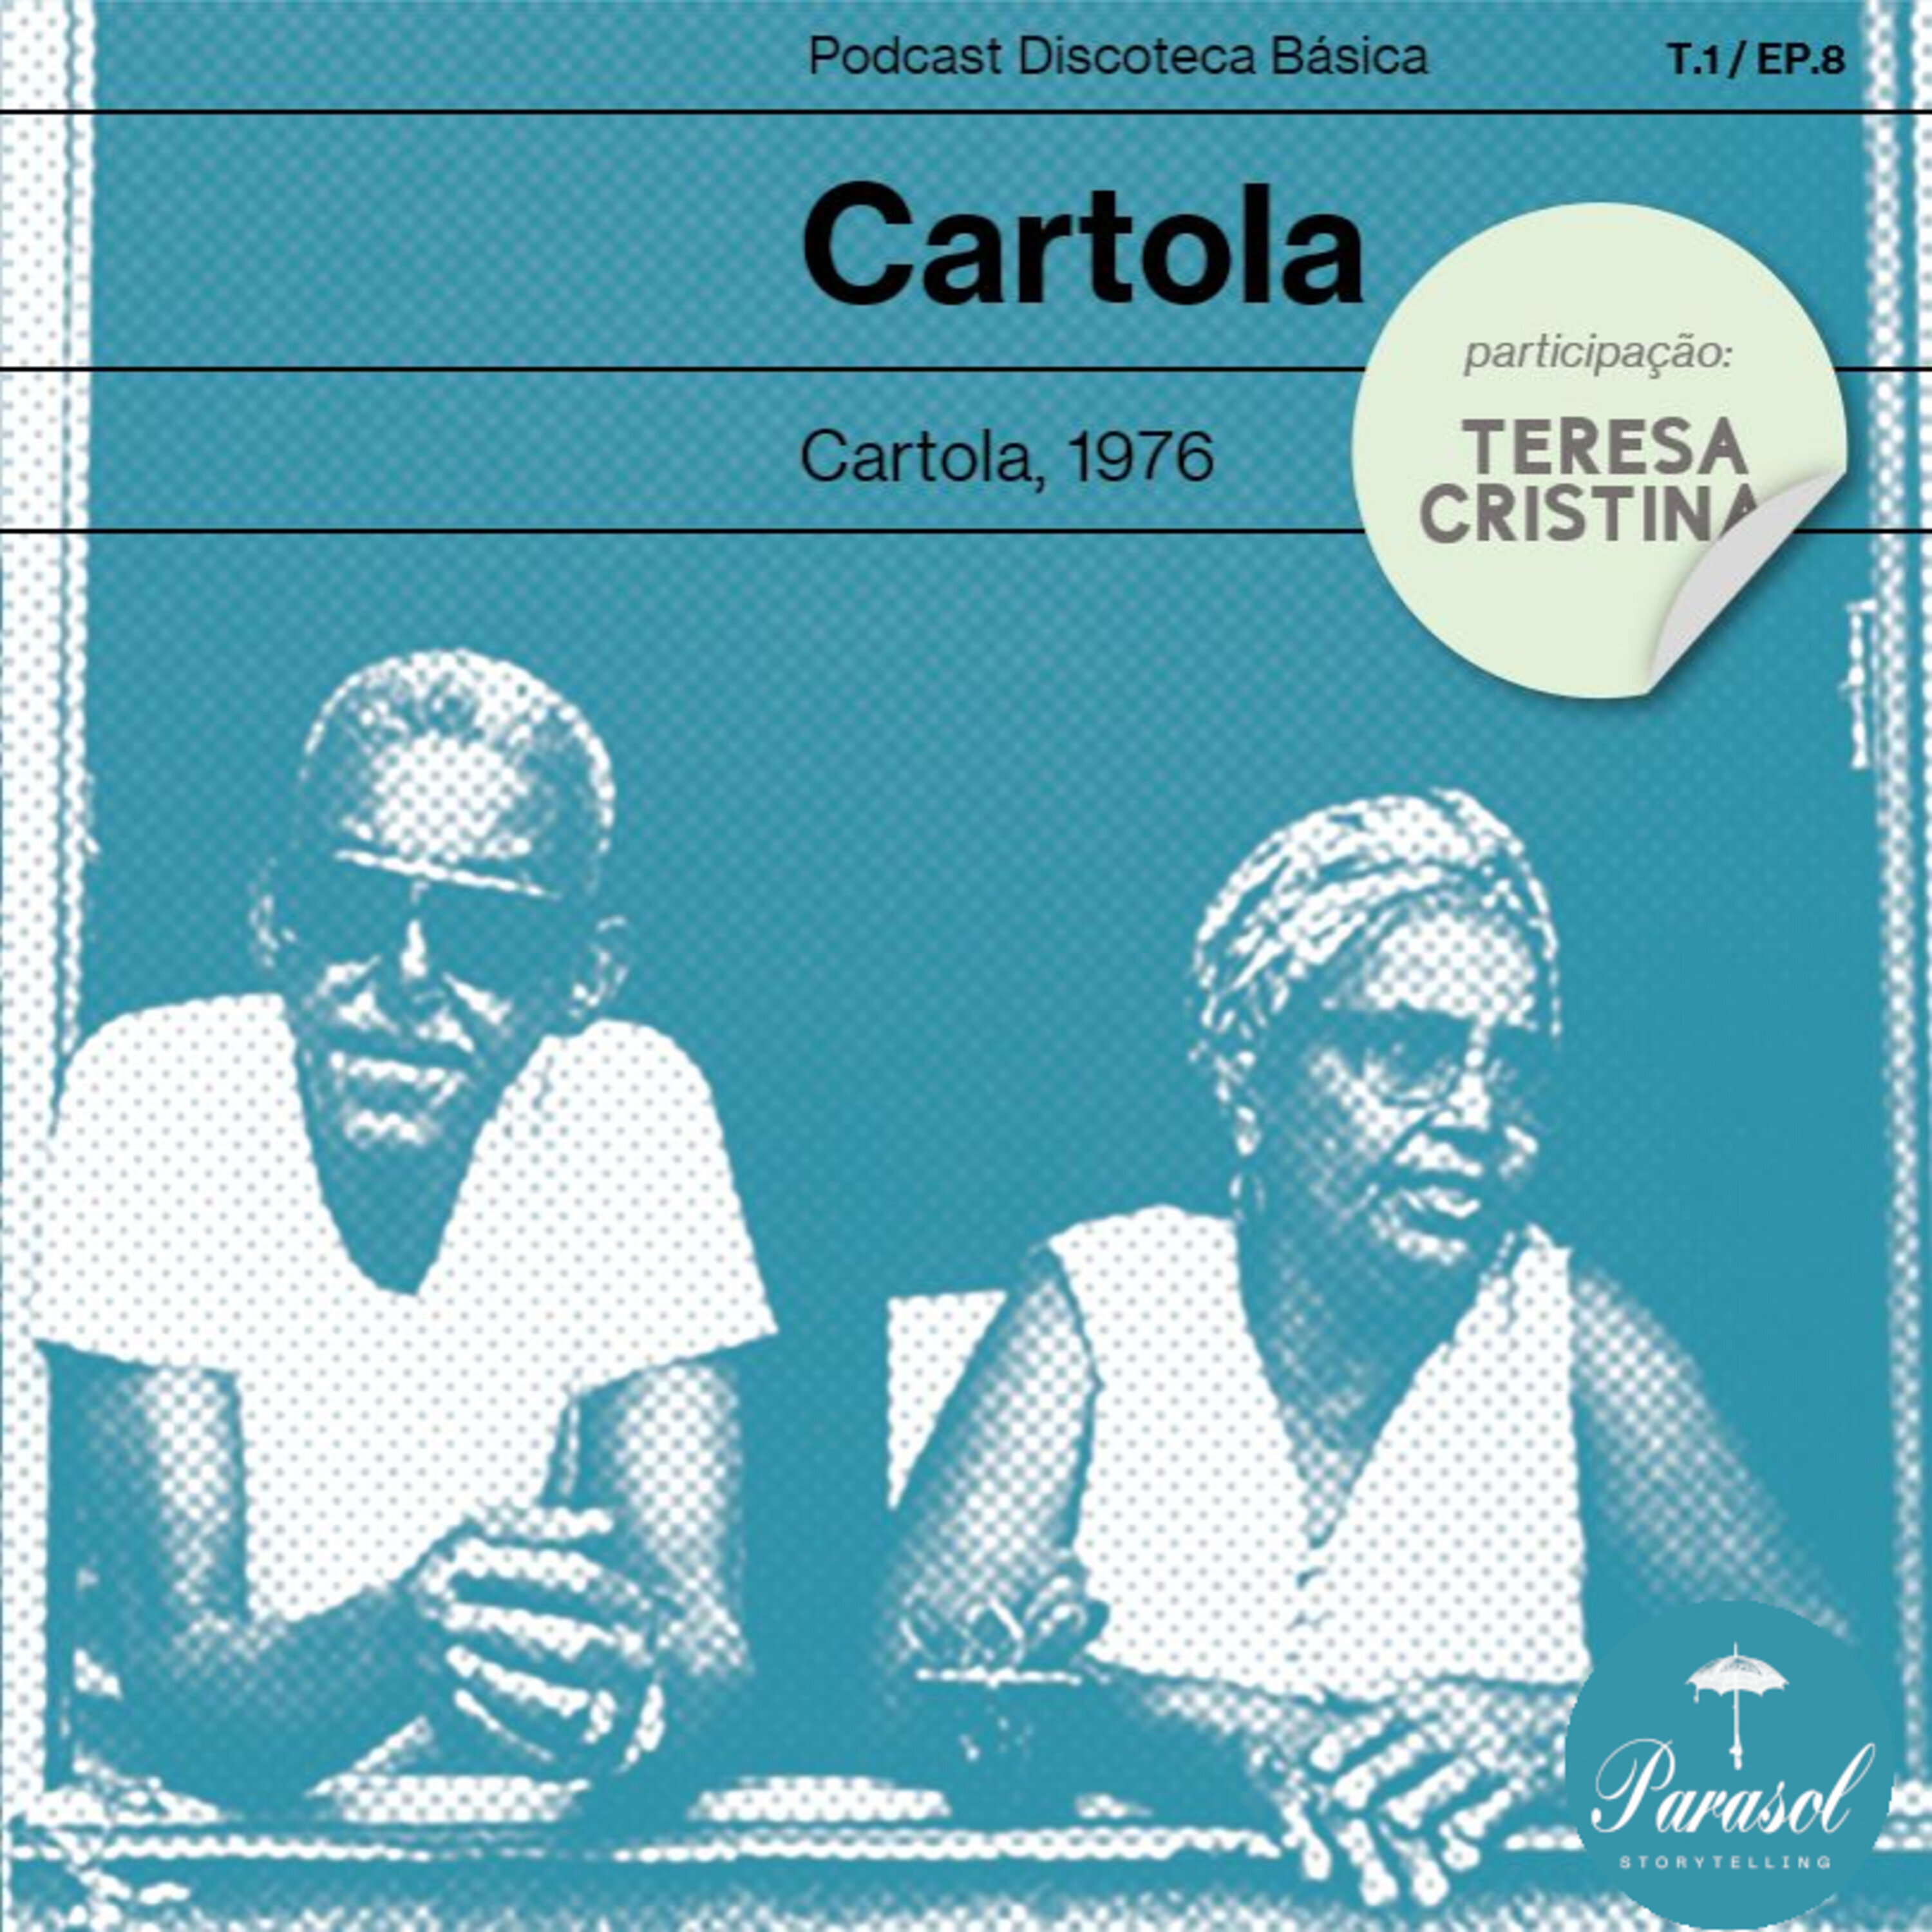 T01E08: Cartola - Cartola (1976)